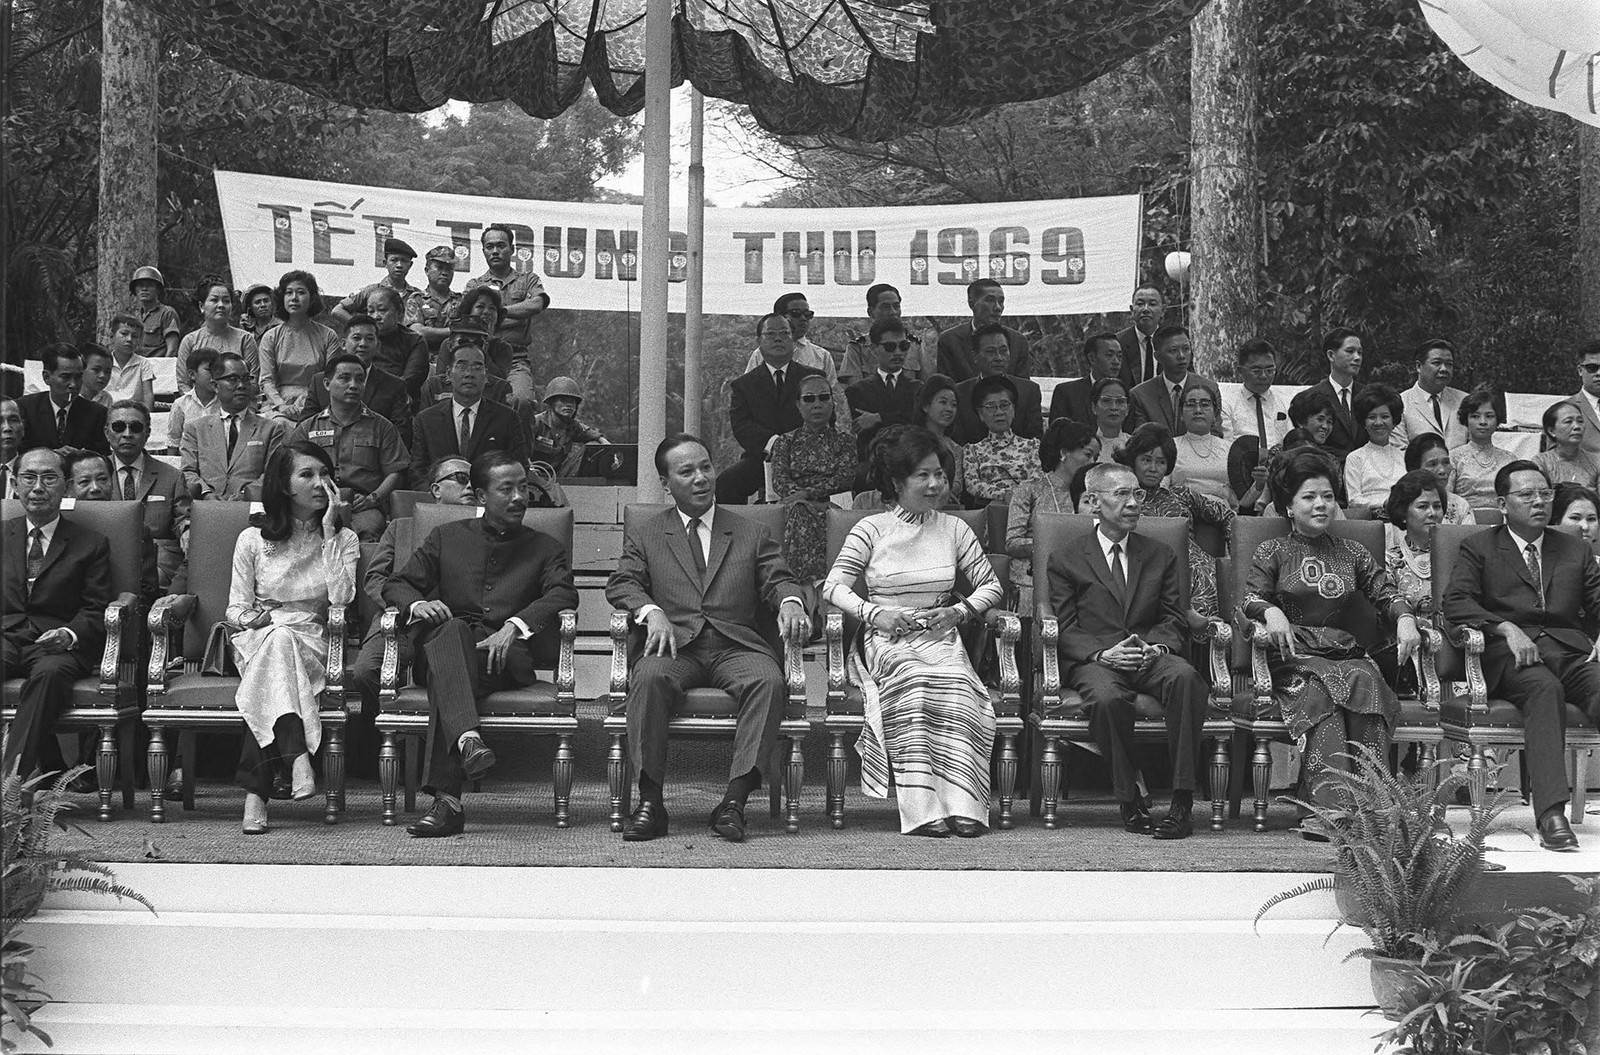 Tết Trung Thu 1969 - Các nhà lãnh đạo VNCH vui tết Trung thu với thiếu nhi tại vườn Tao Đàn Saigon